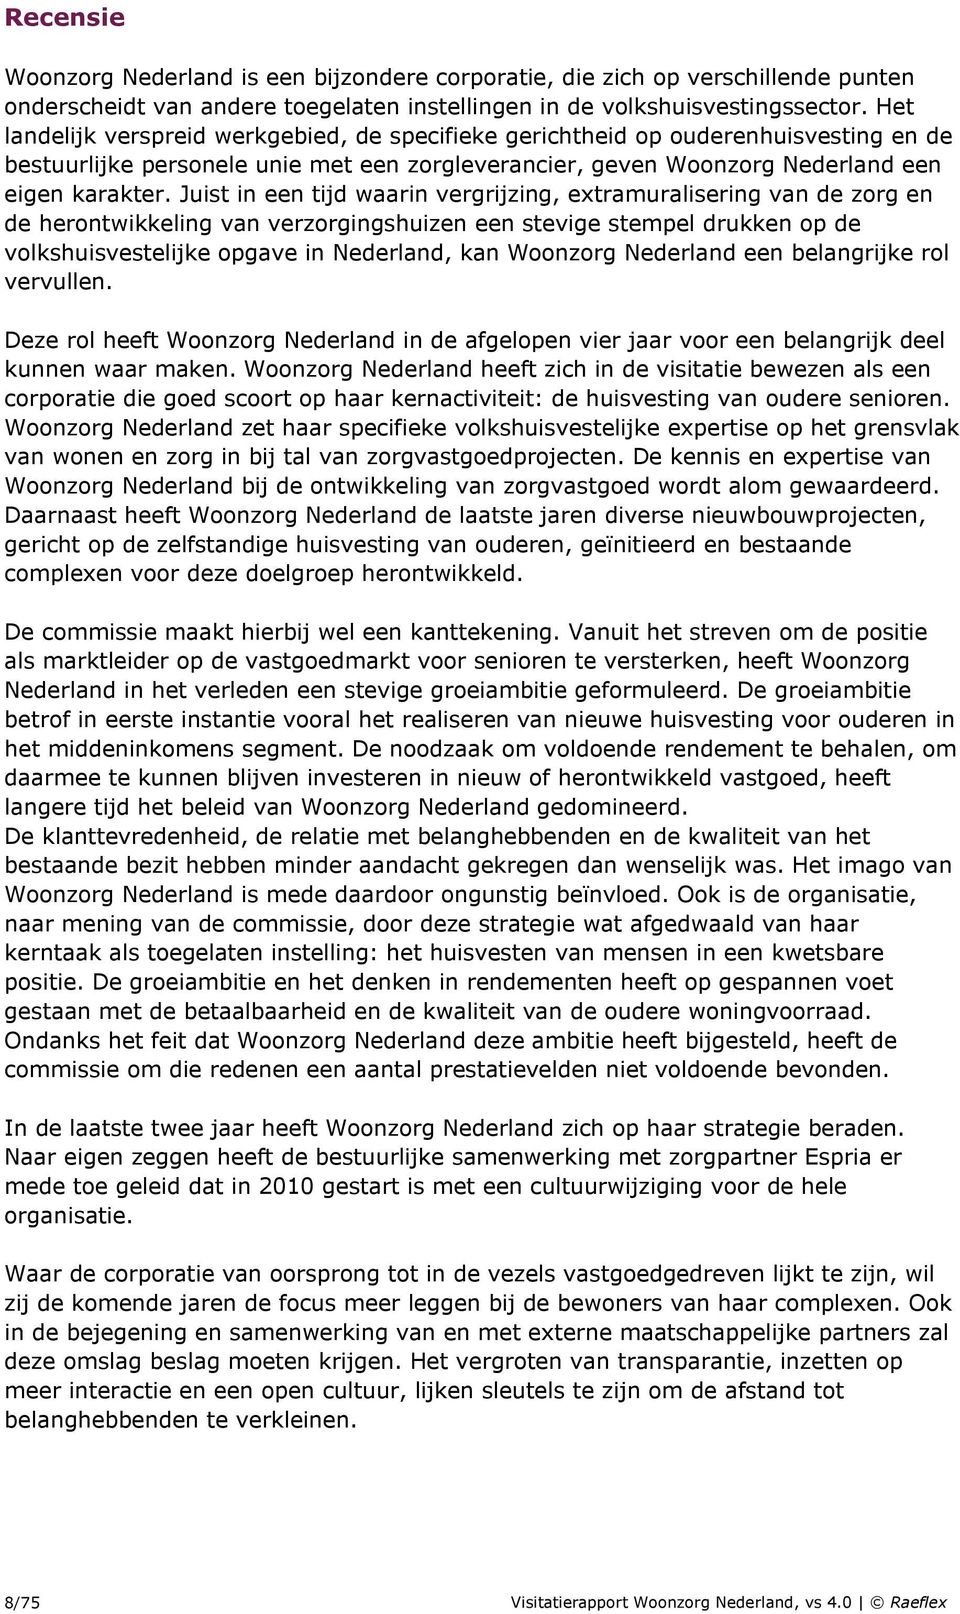 Juist in een tijd waarin vergrijzing, extramuralisering van de zorg en de herontwikkeling van verzorgingshuizen een stevige stempel drukken op de volkshuisvestelijke opgave in Nederland, kan Woonzorg